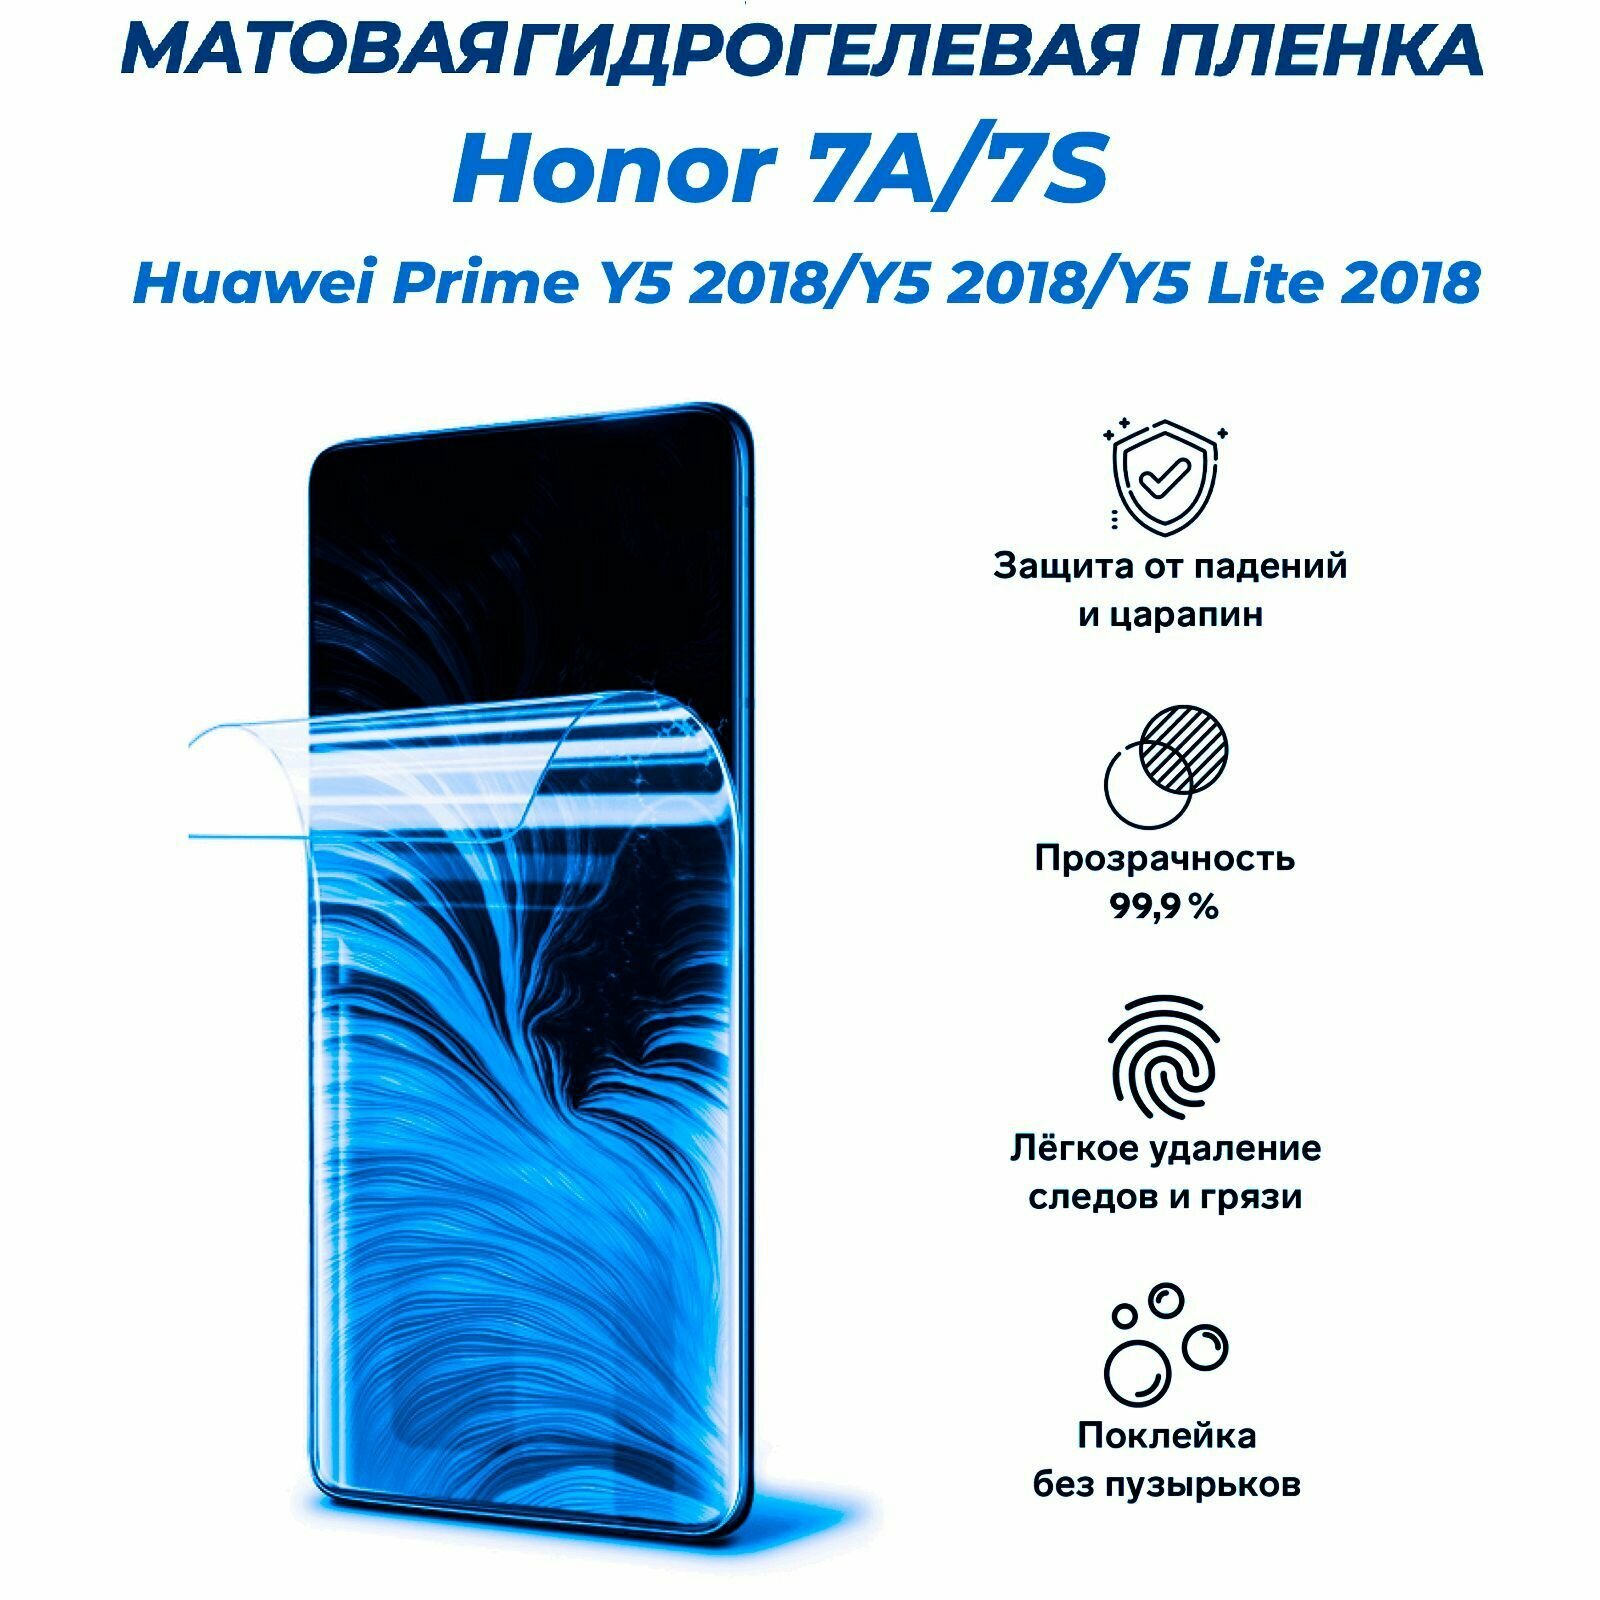 Матовая гидрогелевая защитная пленка для Honor 7A 7S 7A Prime Huawei Y5 (2018) Y5 Prime (2018) Y5 Lite (2018)